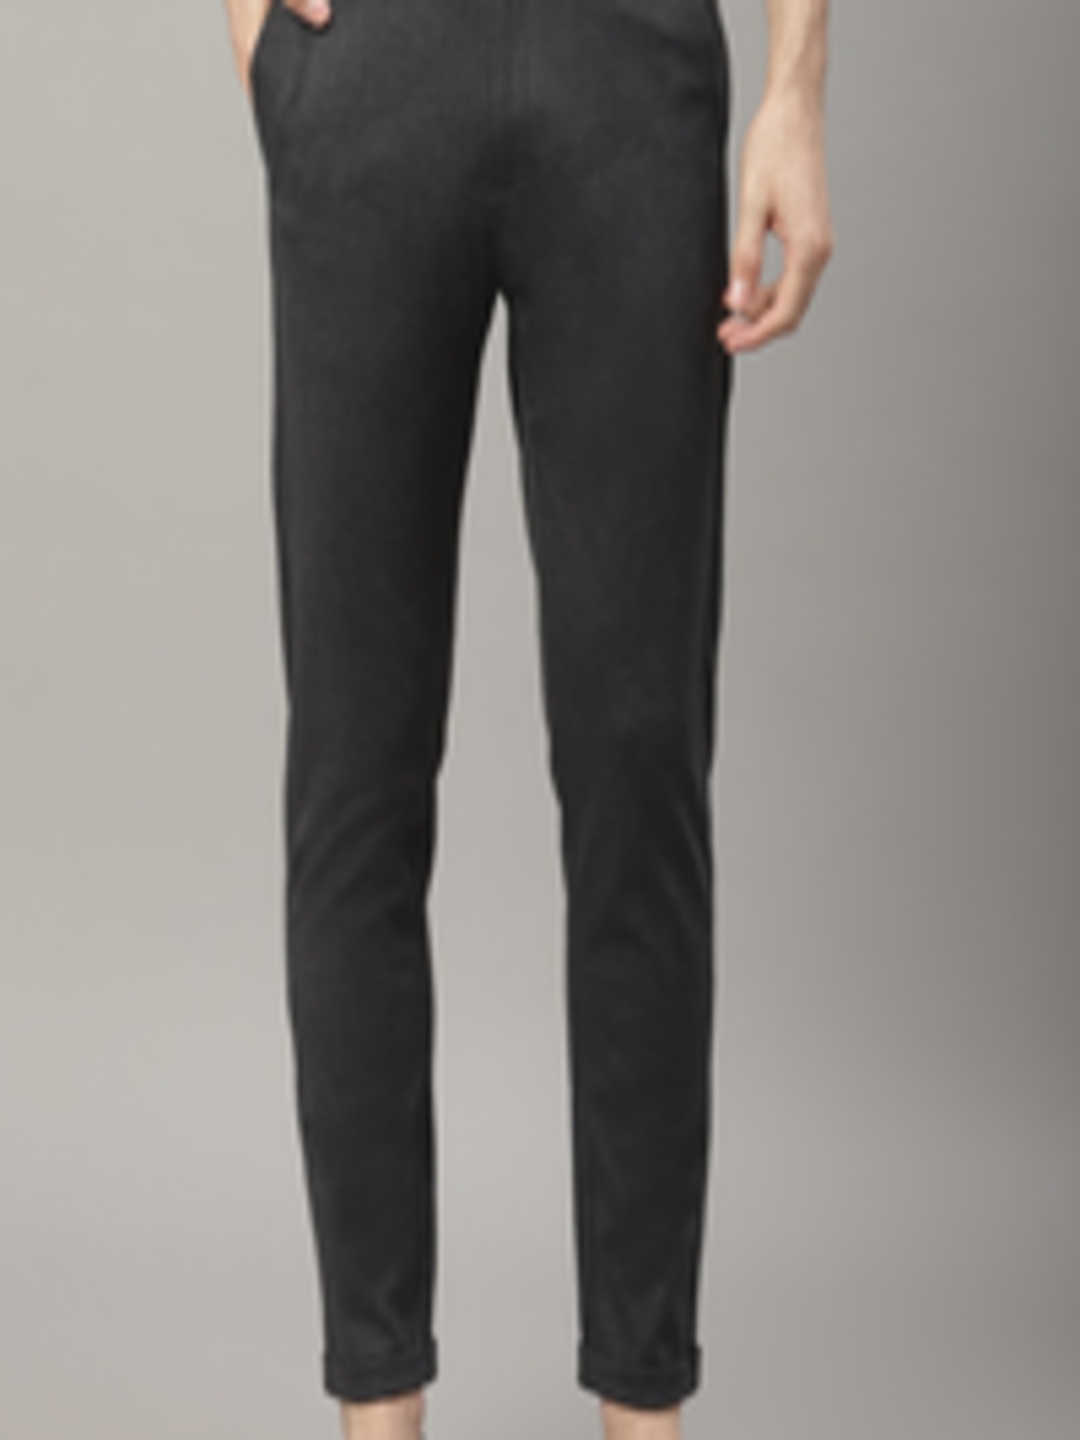 Buy LINDBERGH Men Black Slim Fit Solid Regular Trousers - Trousers for